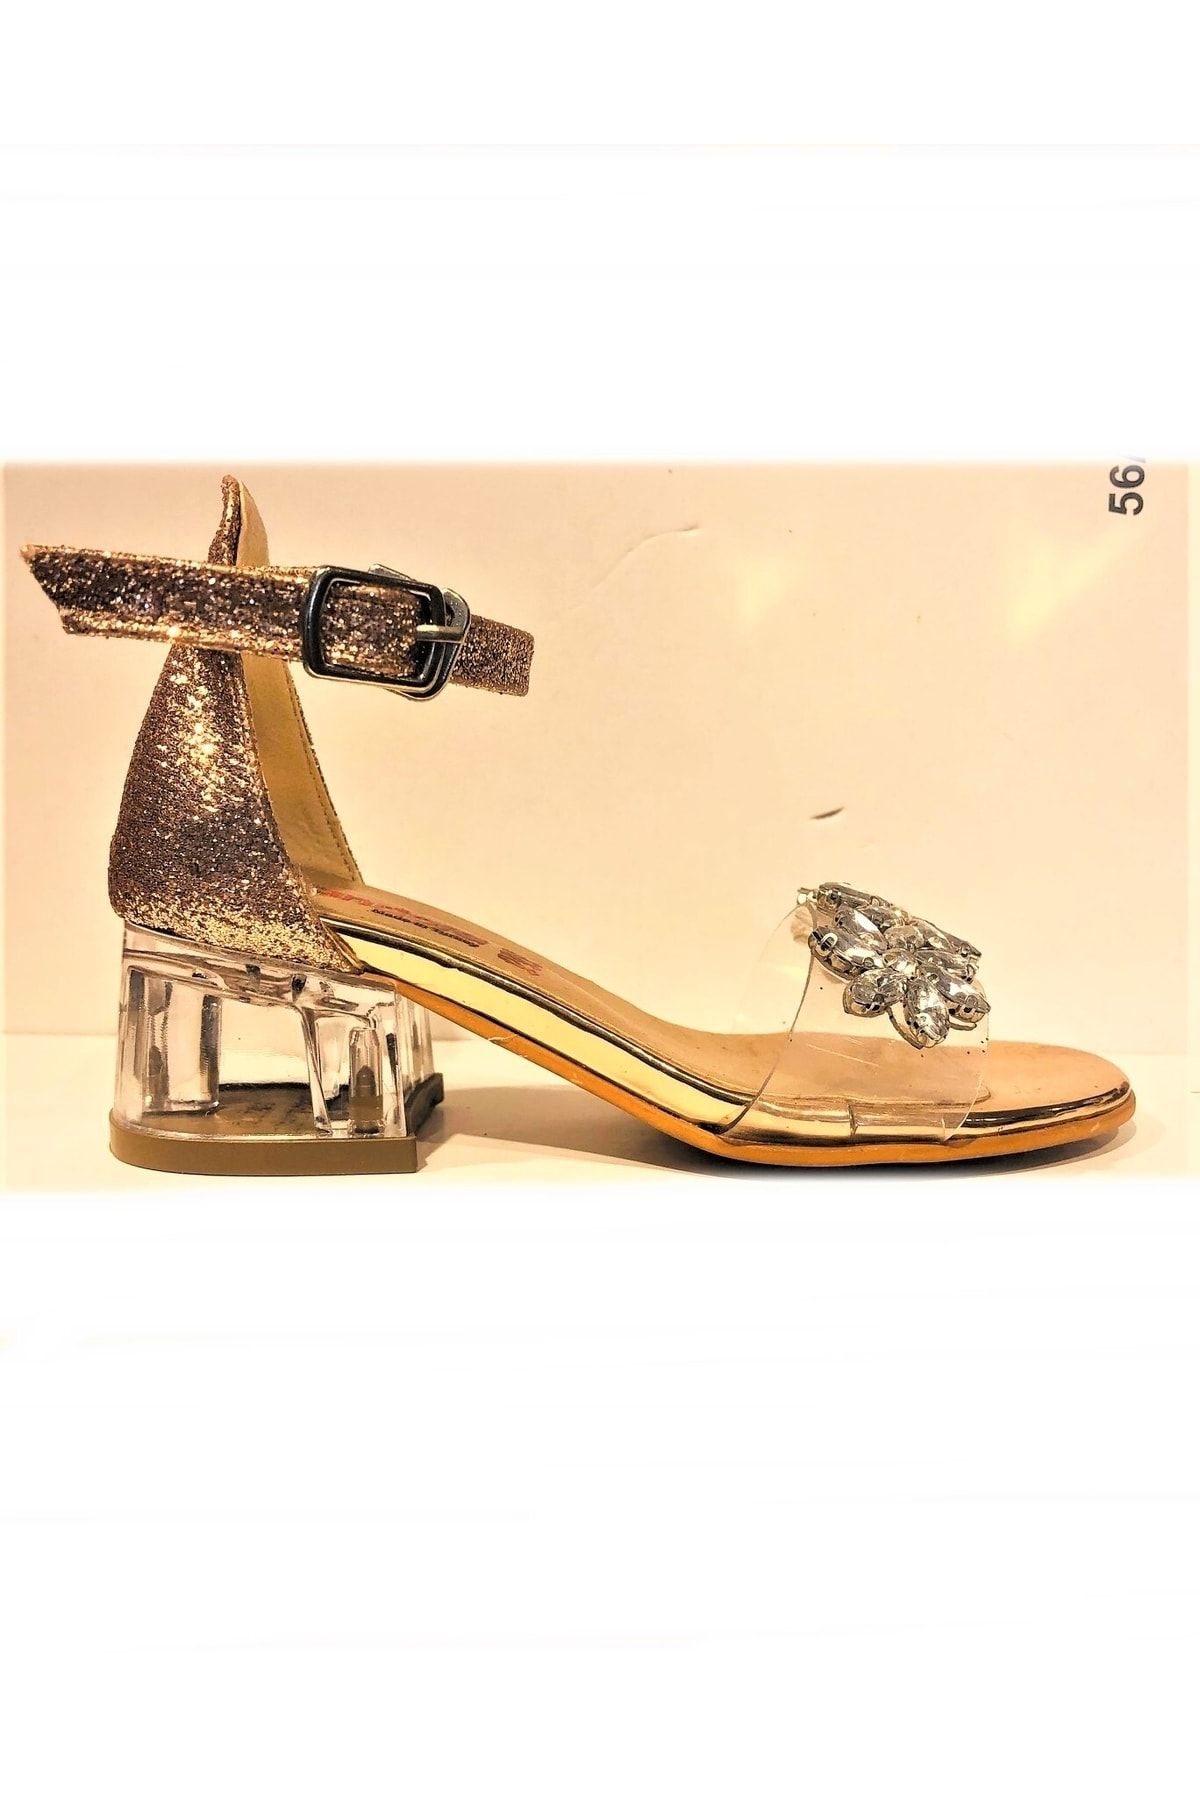 Pandora Kız Çocuk Abiye Ayakkabı Şeffaf Topuk Dügün Ve Balo Ayakkabısı 855p762 Marsilya